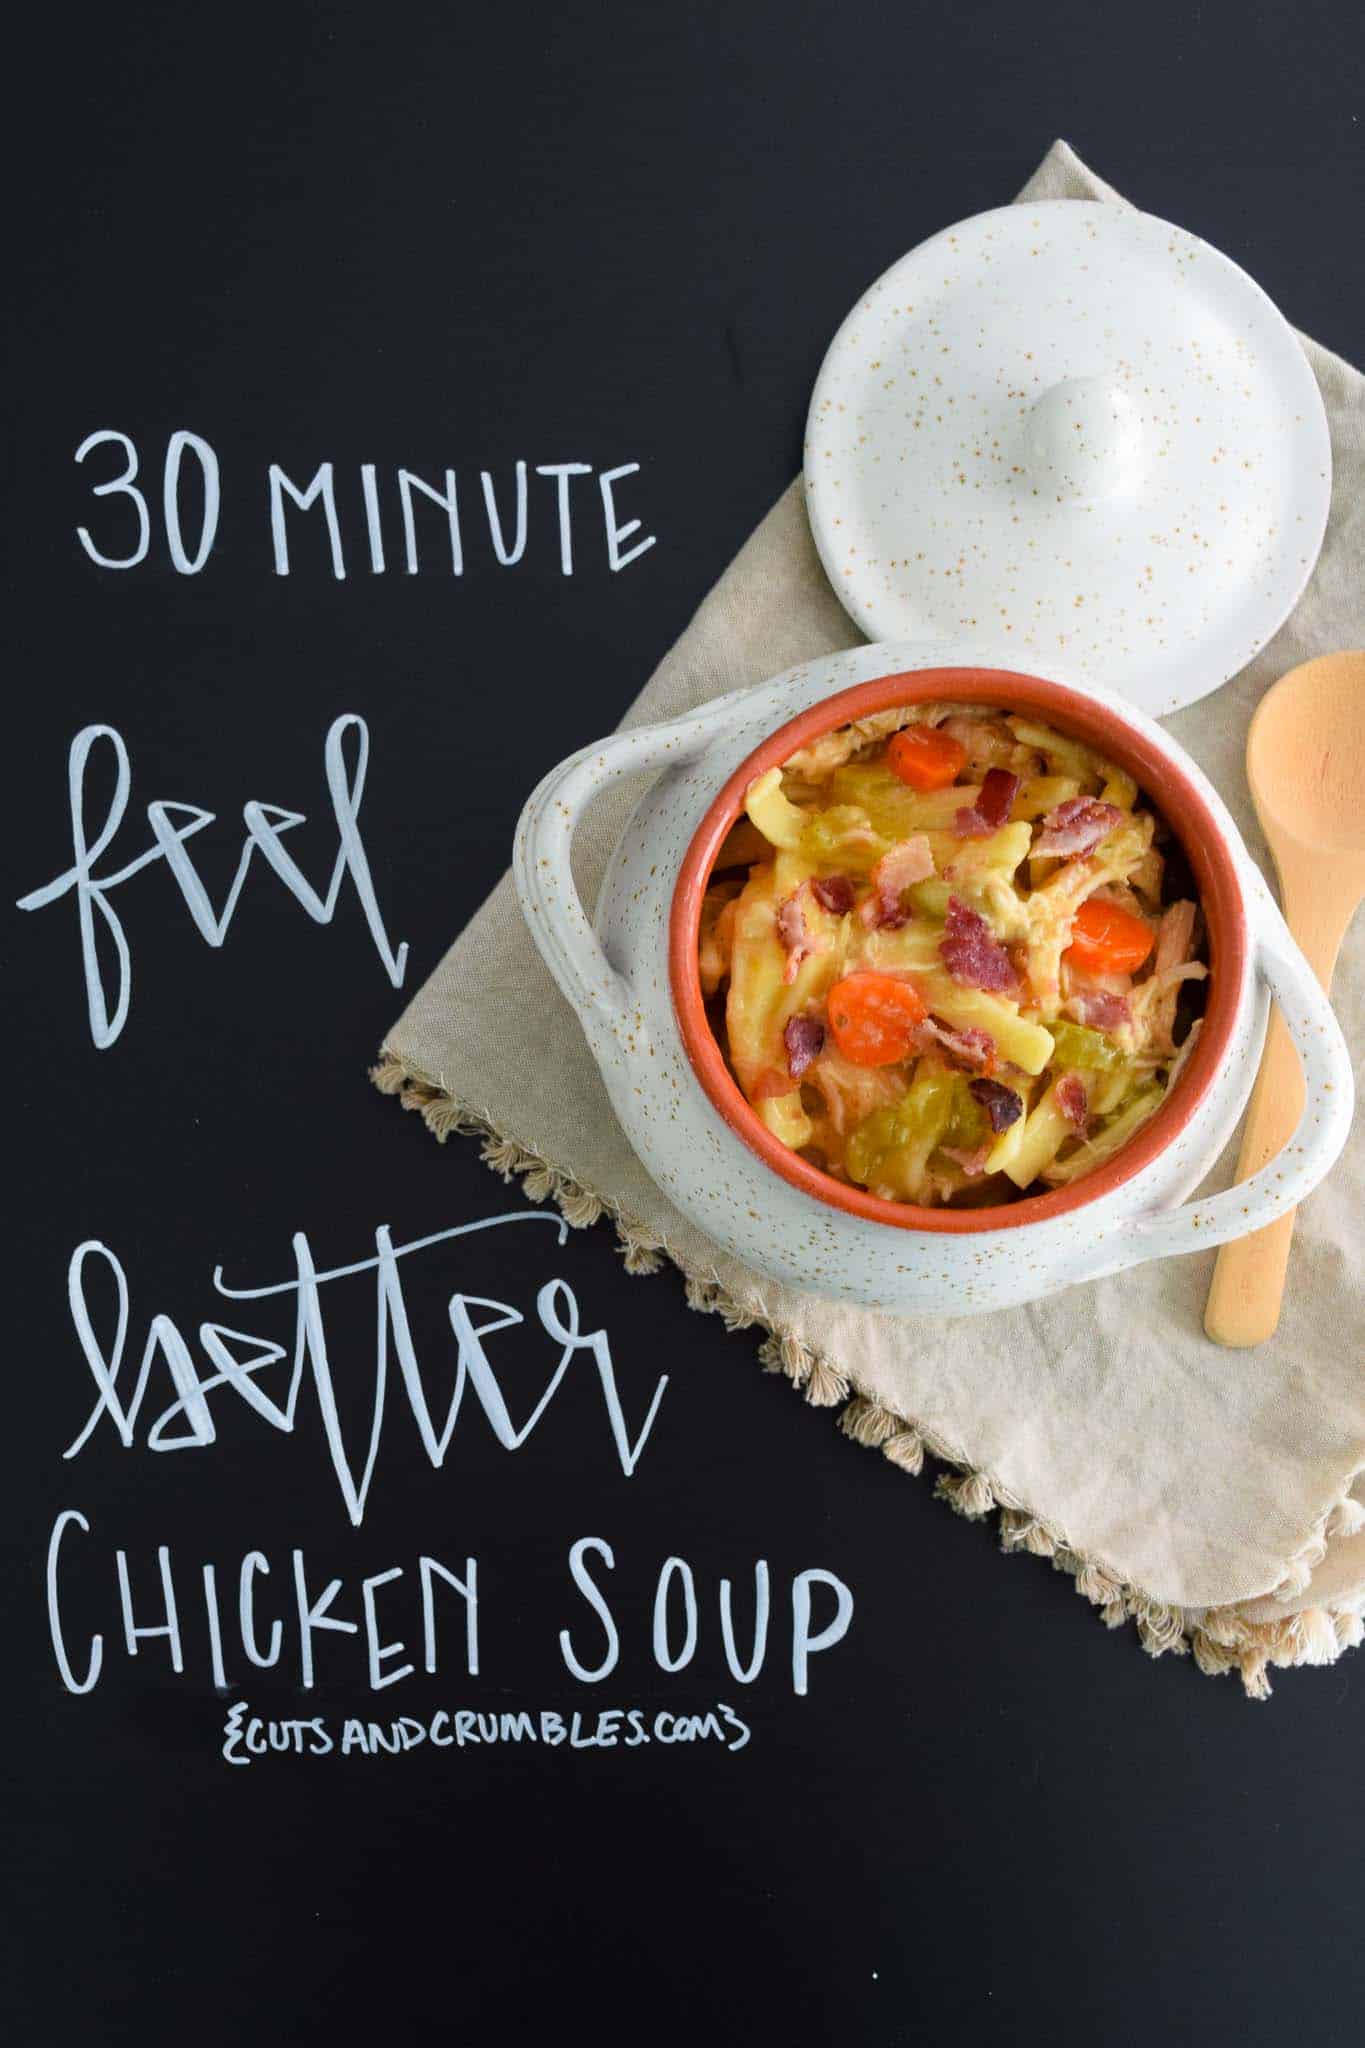 30 Minute Feel Better Chicken Soup with title written on chalkboard